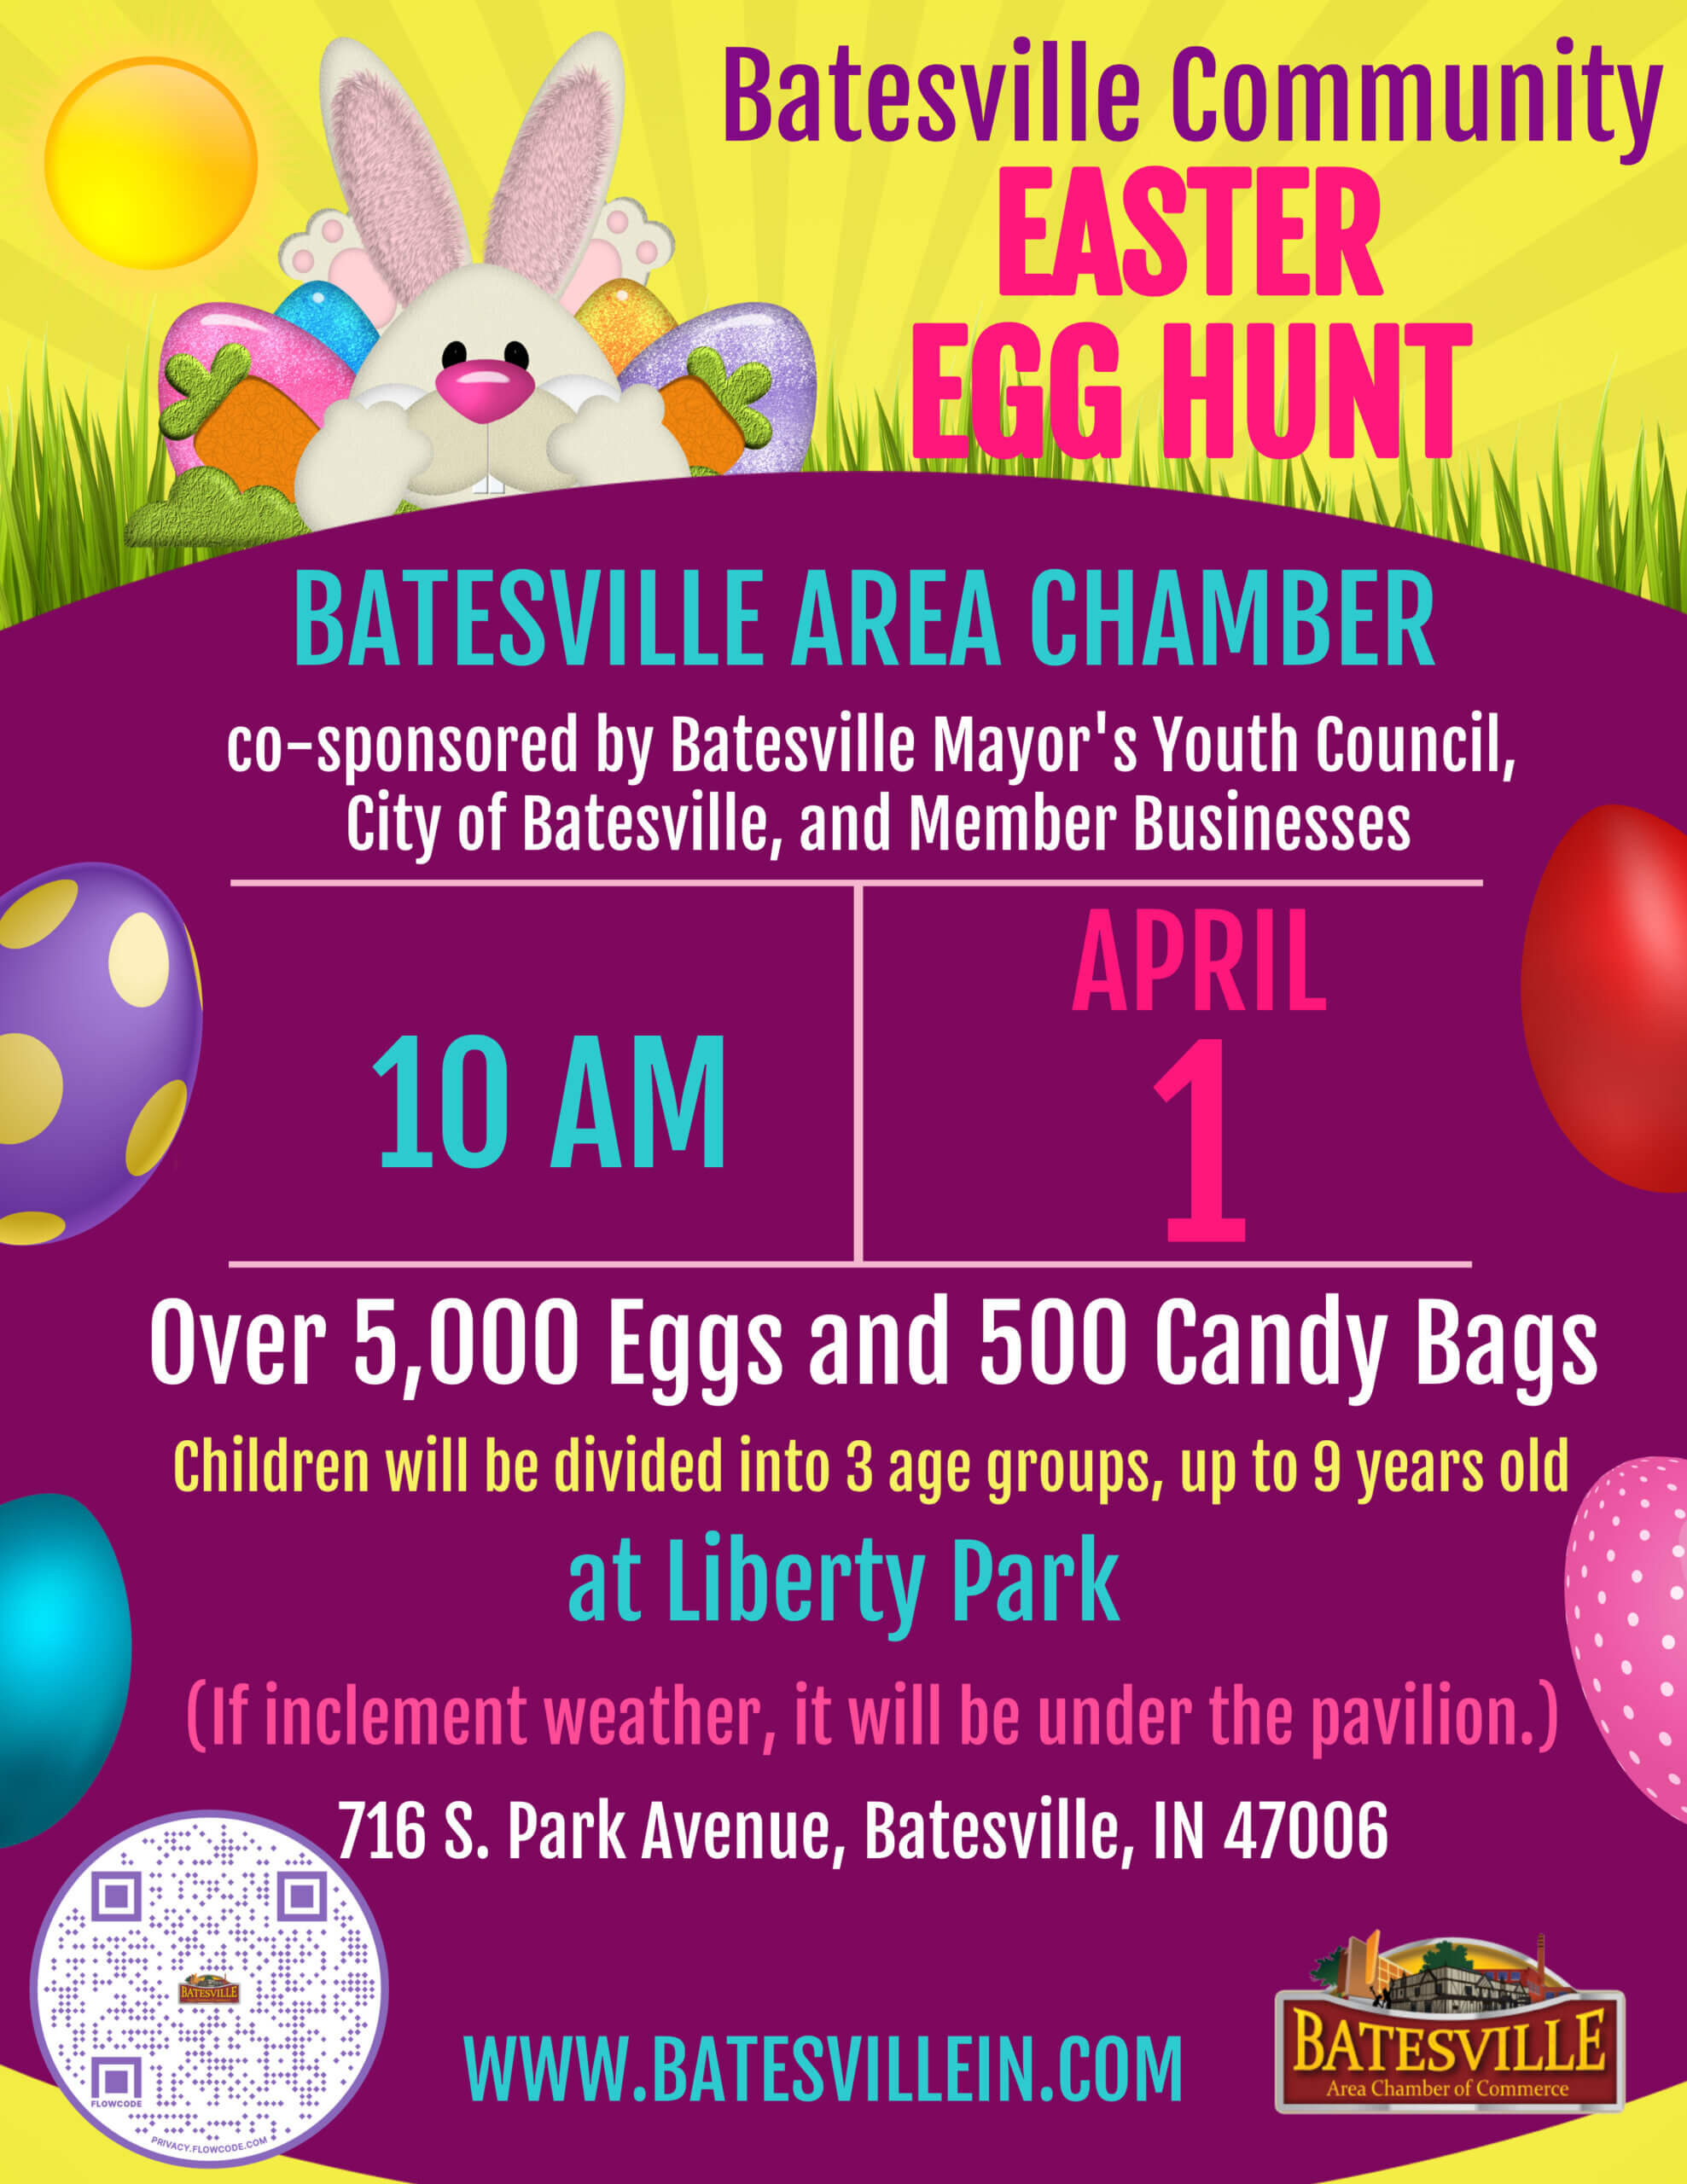 Batesville Area Chamber Community Easter Egg Hunt Batesville Area